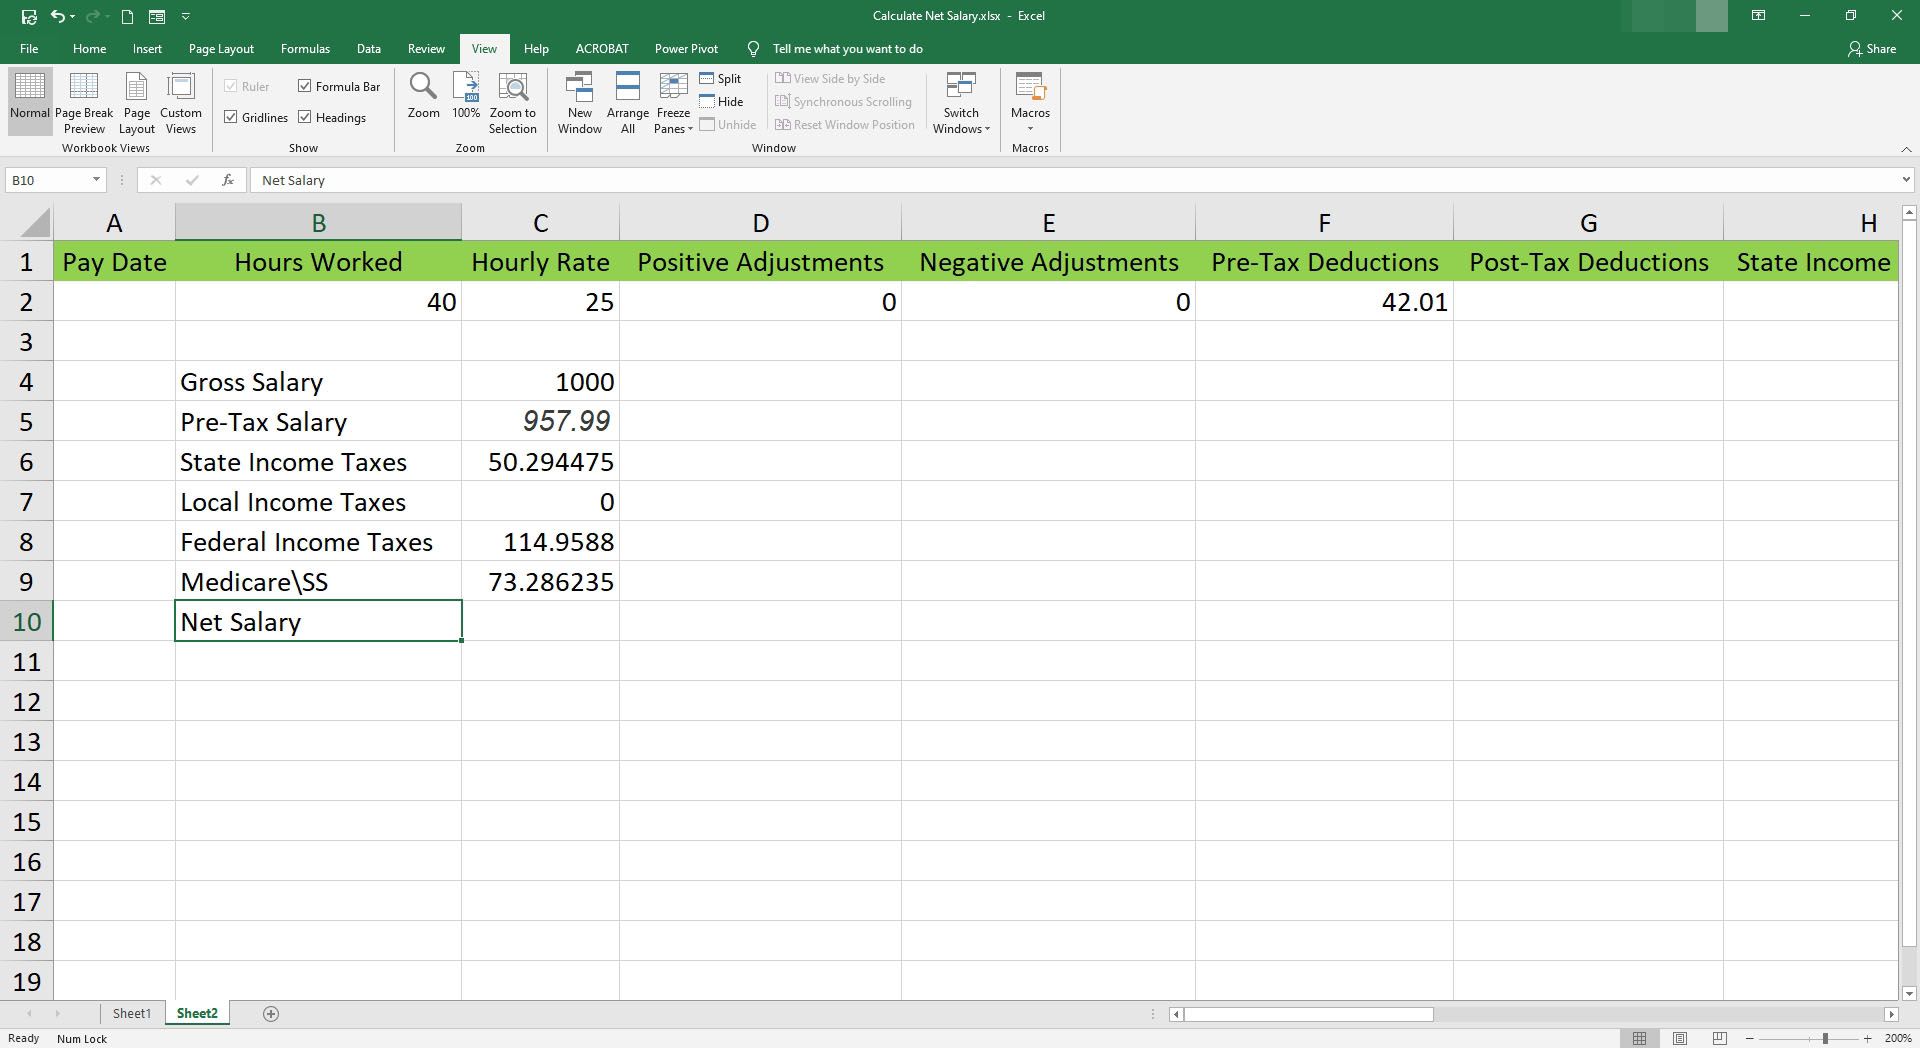 Ange nettolön i en cell i Microsoft Excel.